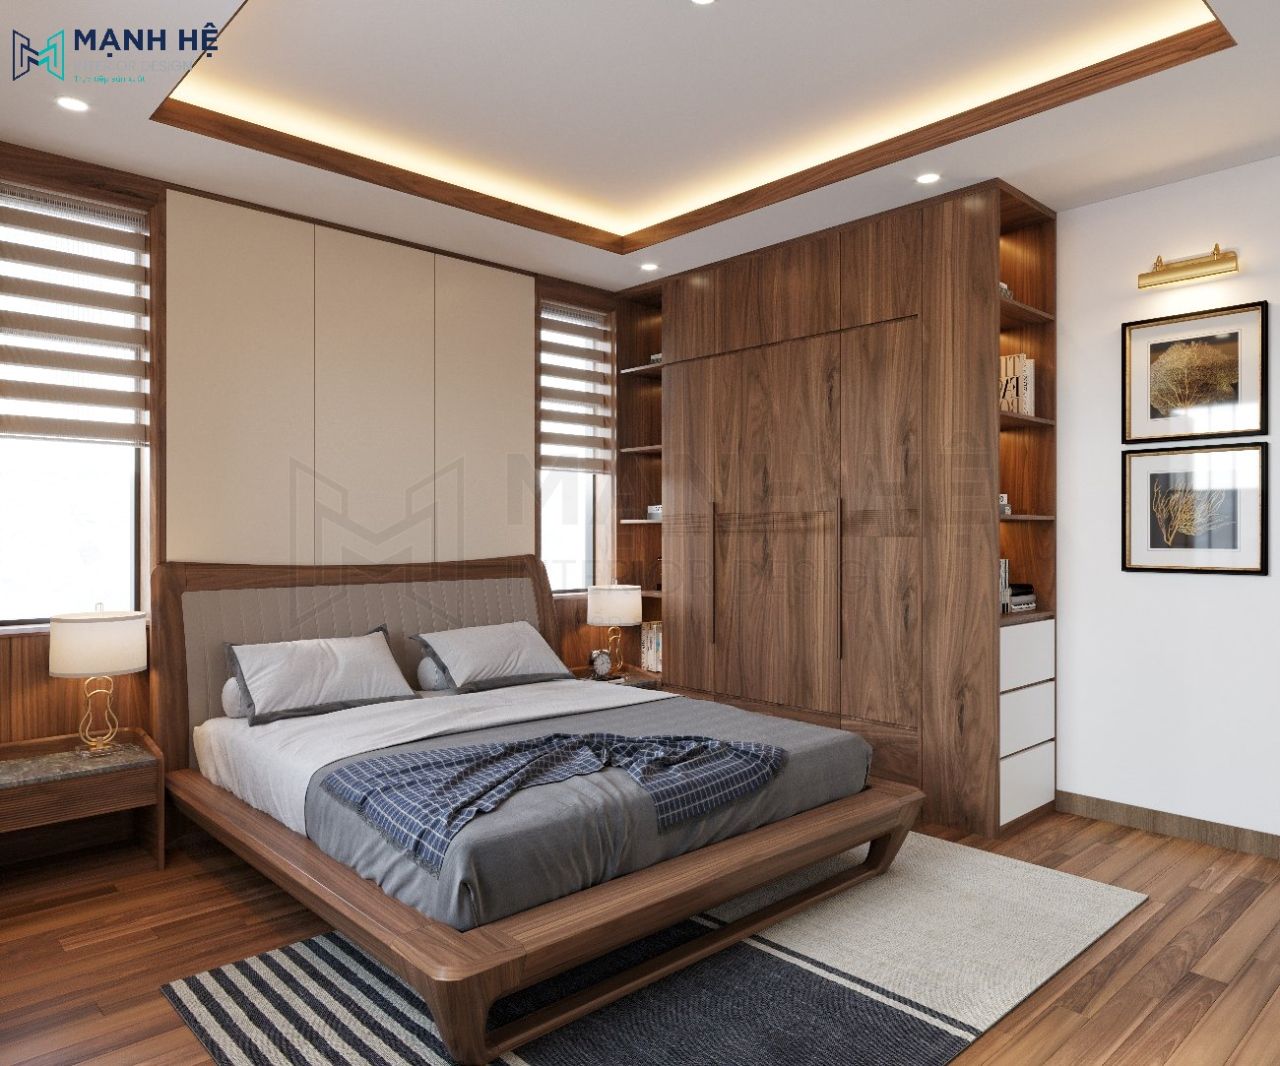 Nội thất phòng ngủ được thiết kế đơn giản mang lại cảm giác gọn gàng, sạch sẽ